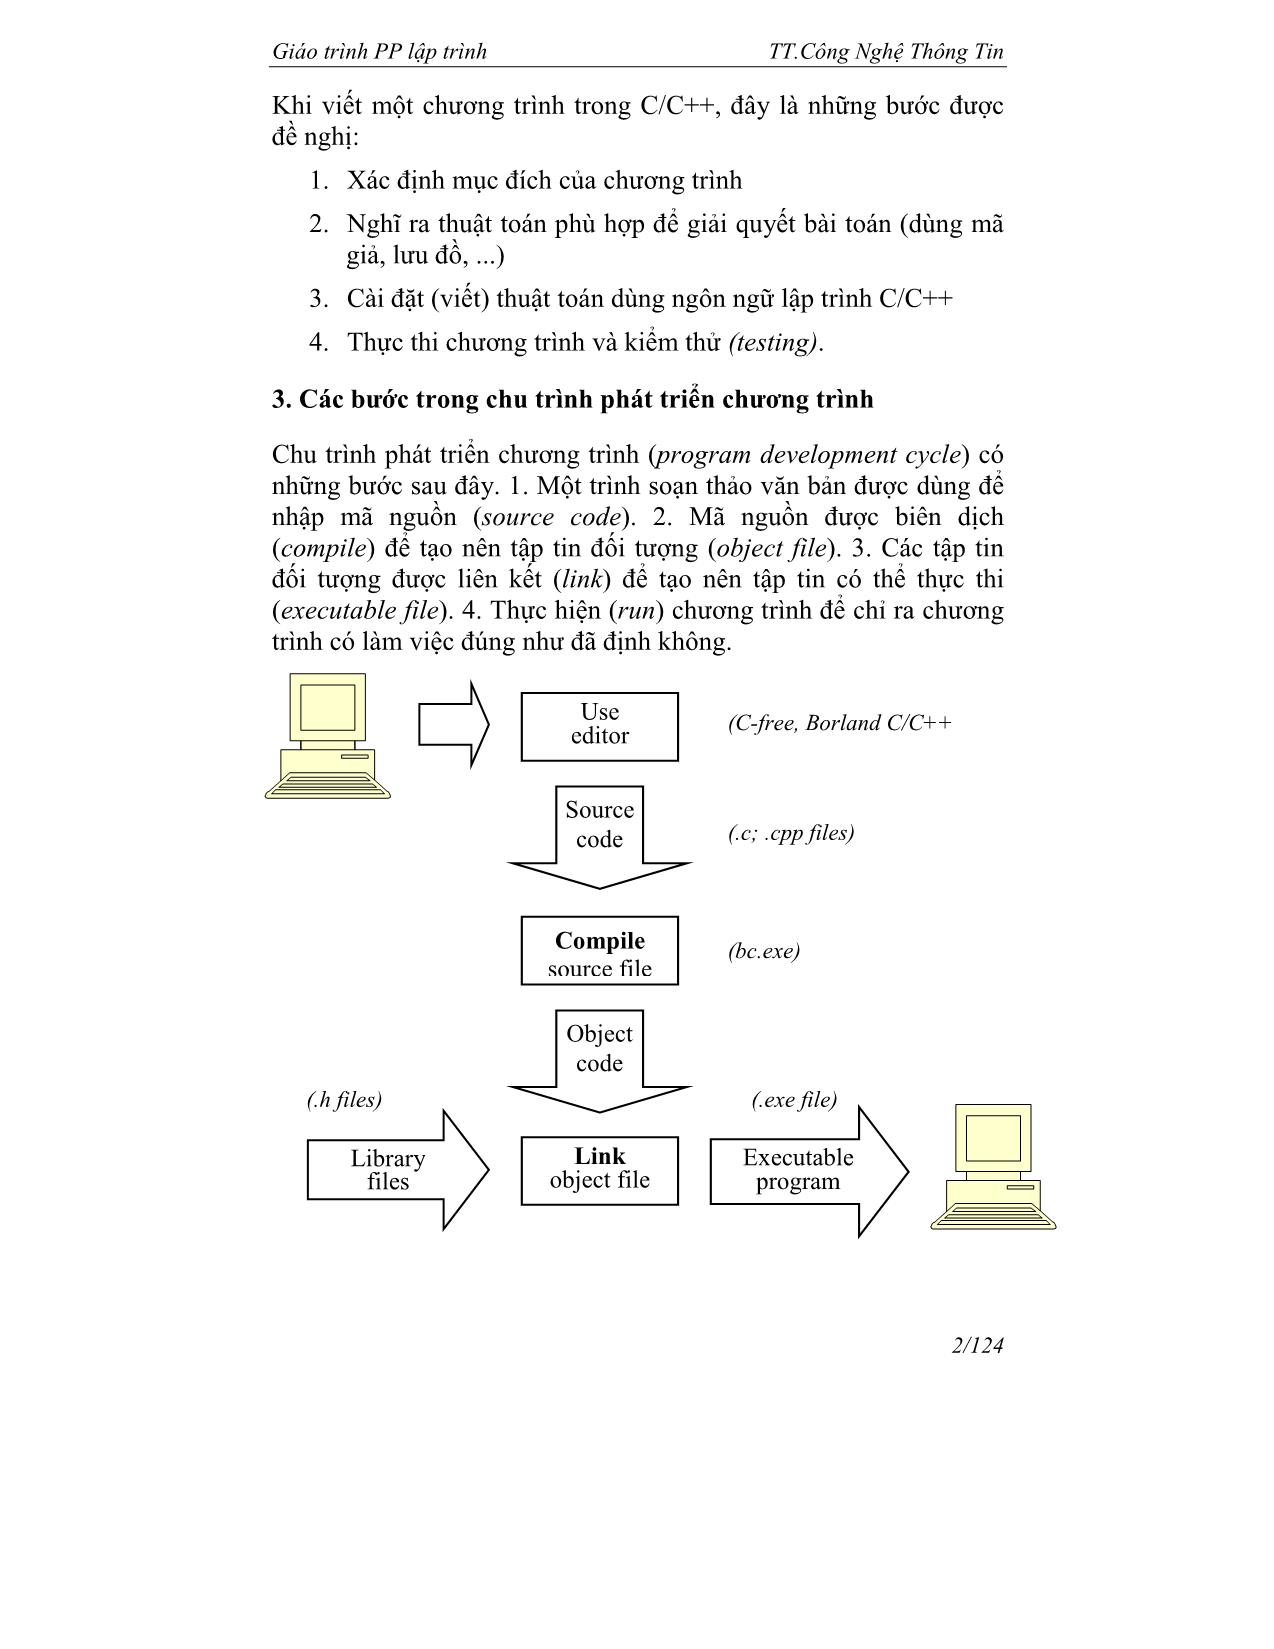 Giáo trình về phương pháp lập trình trang 3